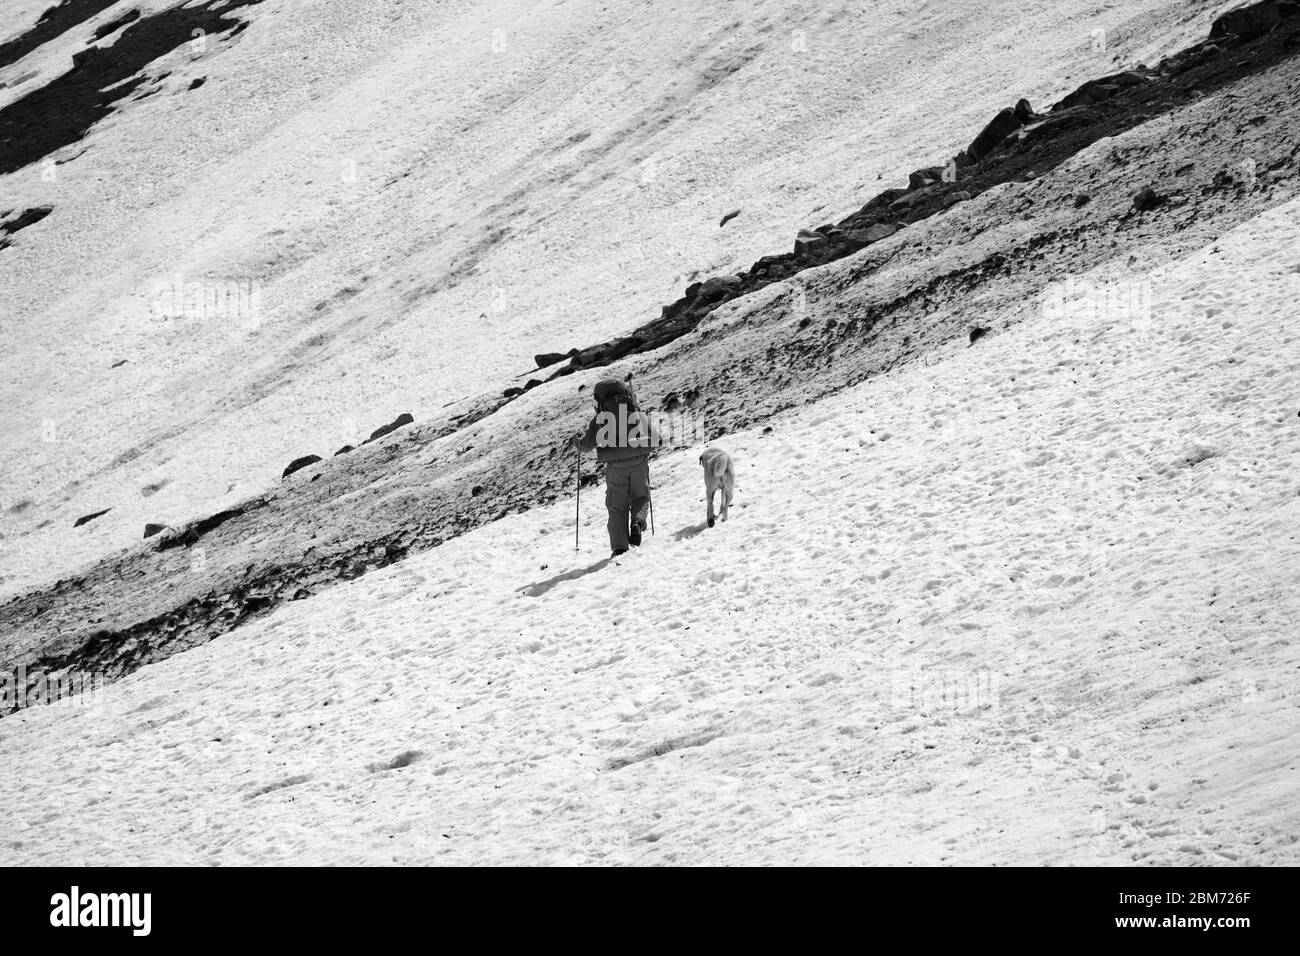 Randonneur avec chien sur glacier enneigé et trace d'avalanche sale dans les hautes montagnes. Noir et blanc rétro tons paysage. Banque D'Images